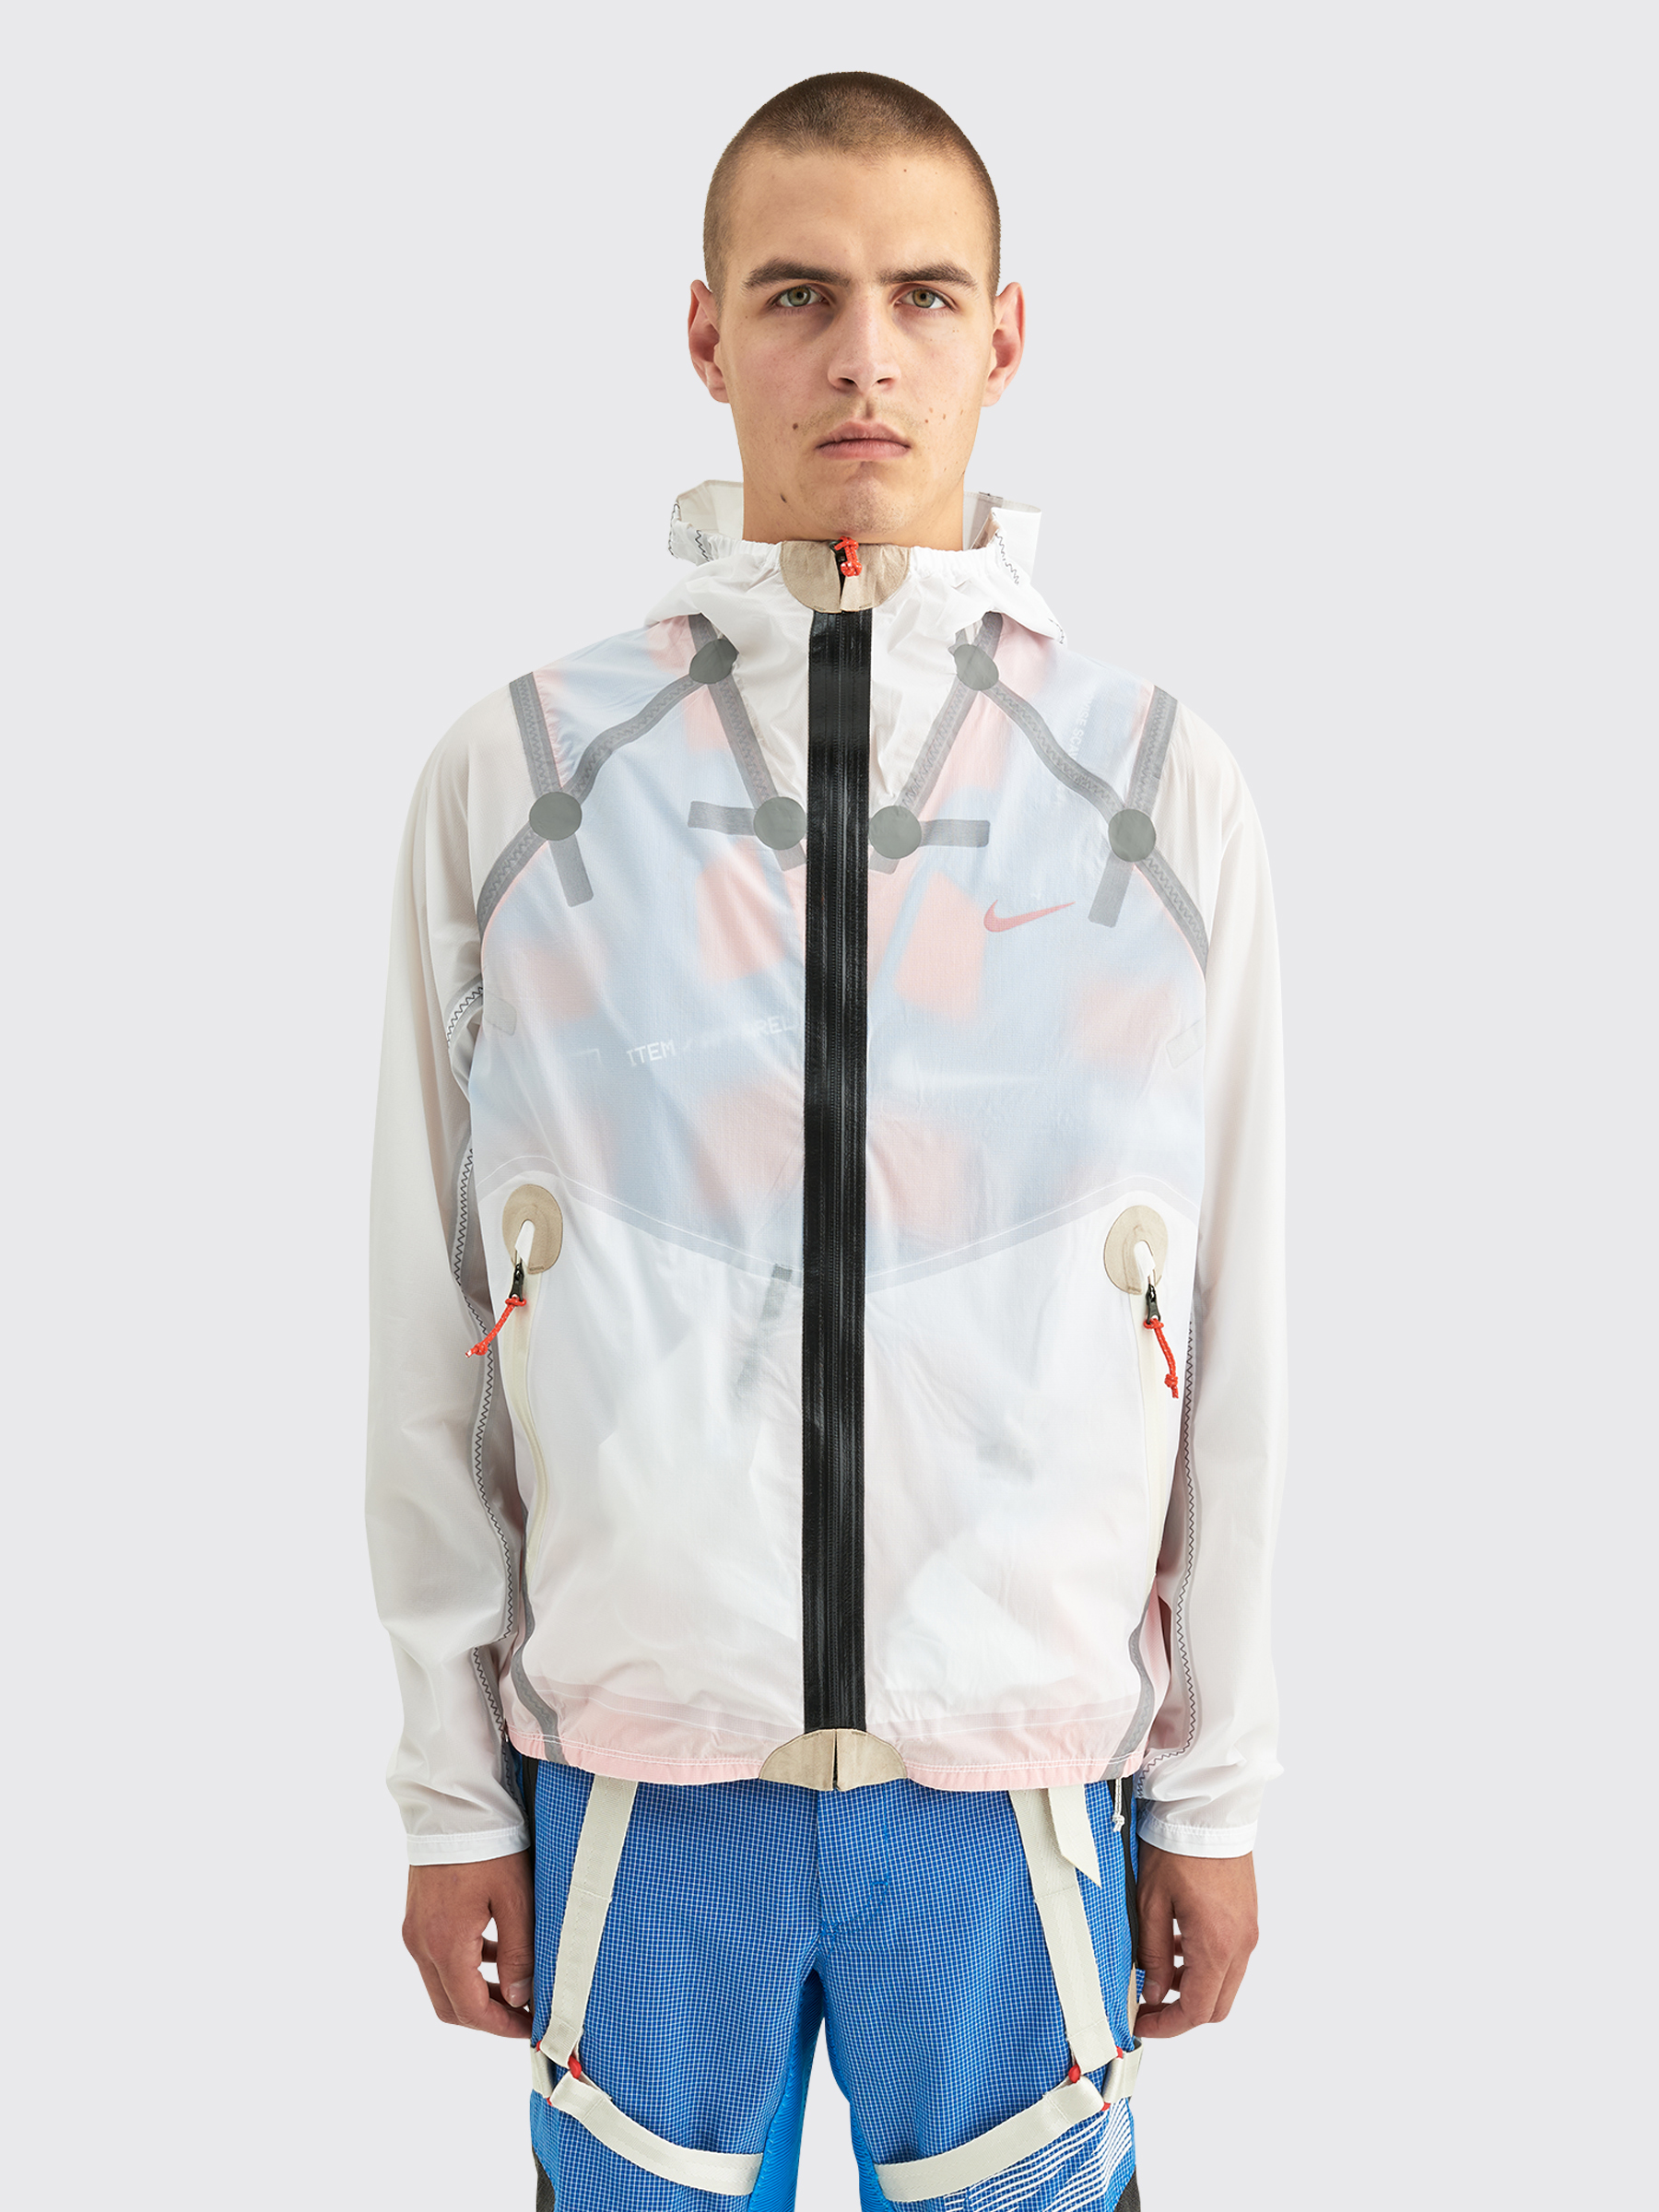 Très Bien - Nike ISPA Inflate Jacket White